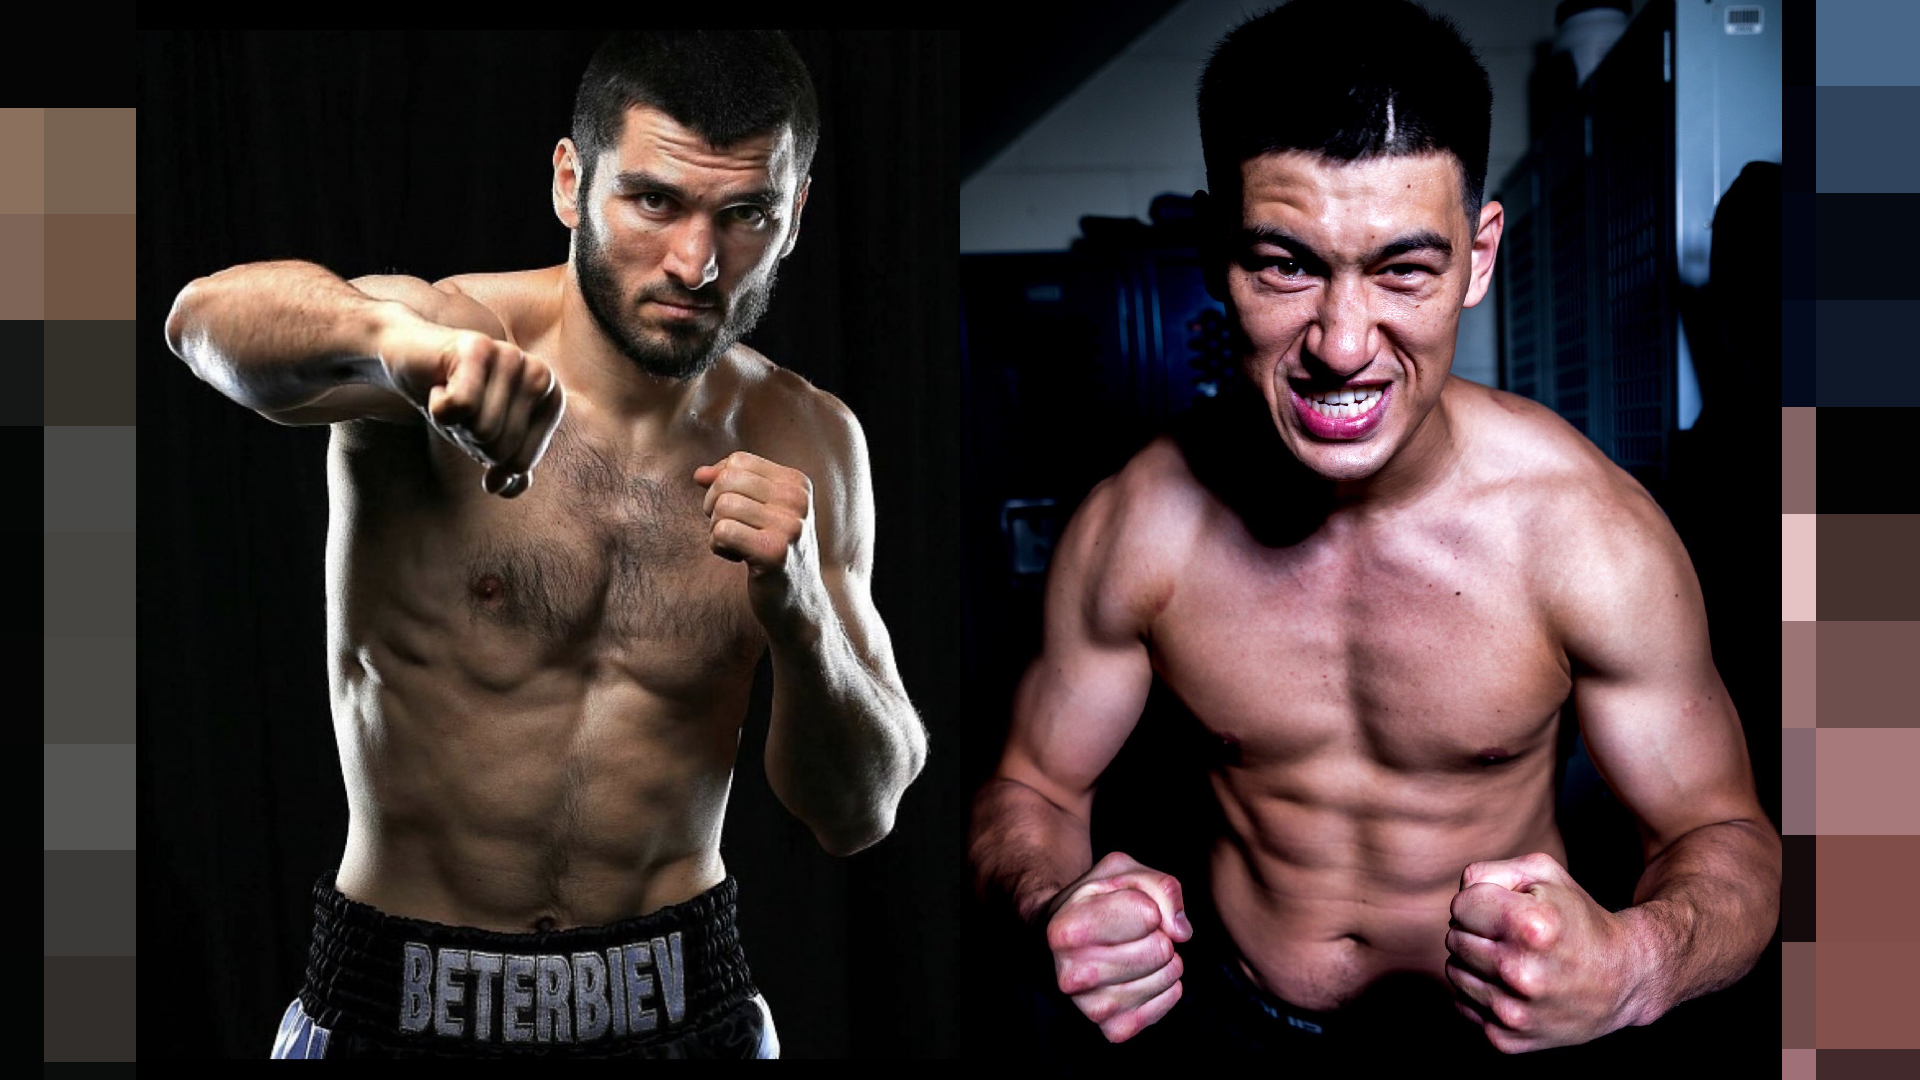 La pelea entre Beterbiev y Dmitry Bivol es una de las más esperadas por su espectacularidad (Twitter/@Reyesboxing-@bivol_d)